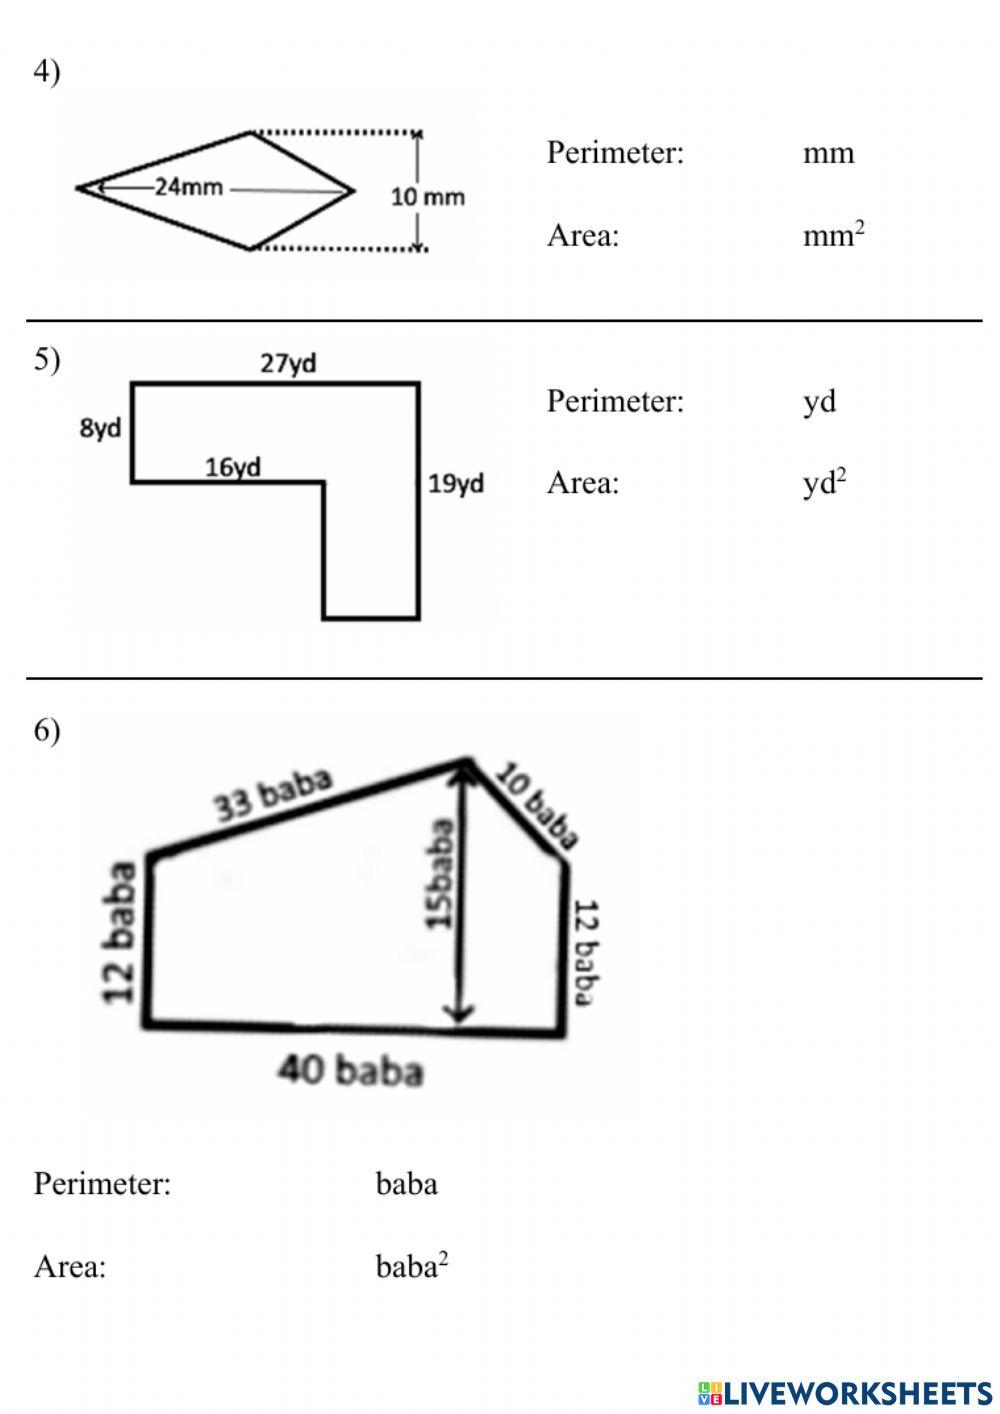 Area and perimeter of quadrilaterals